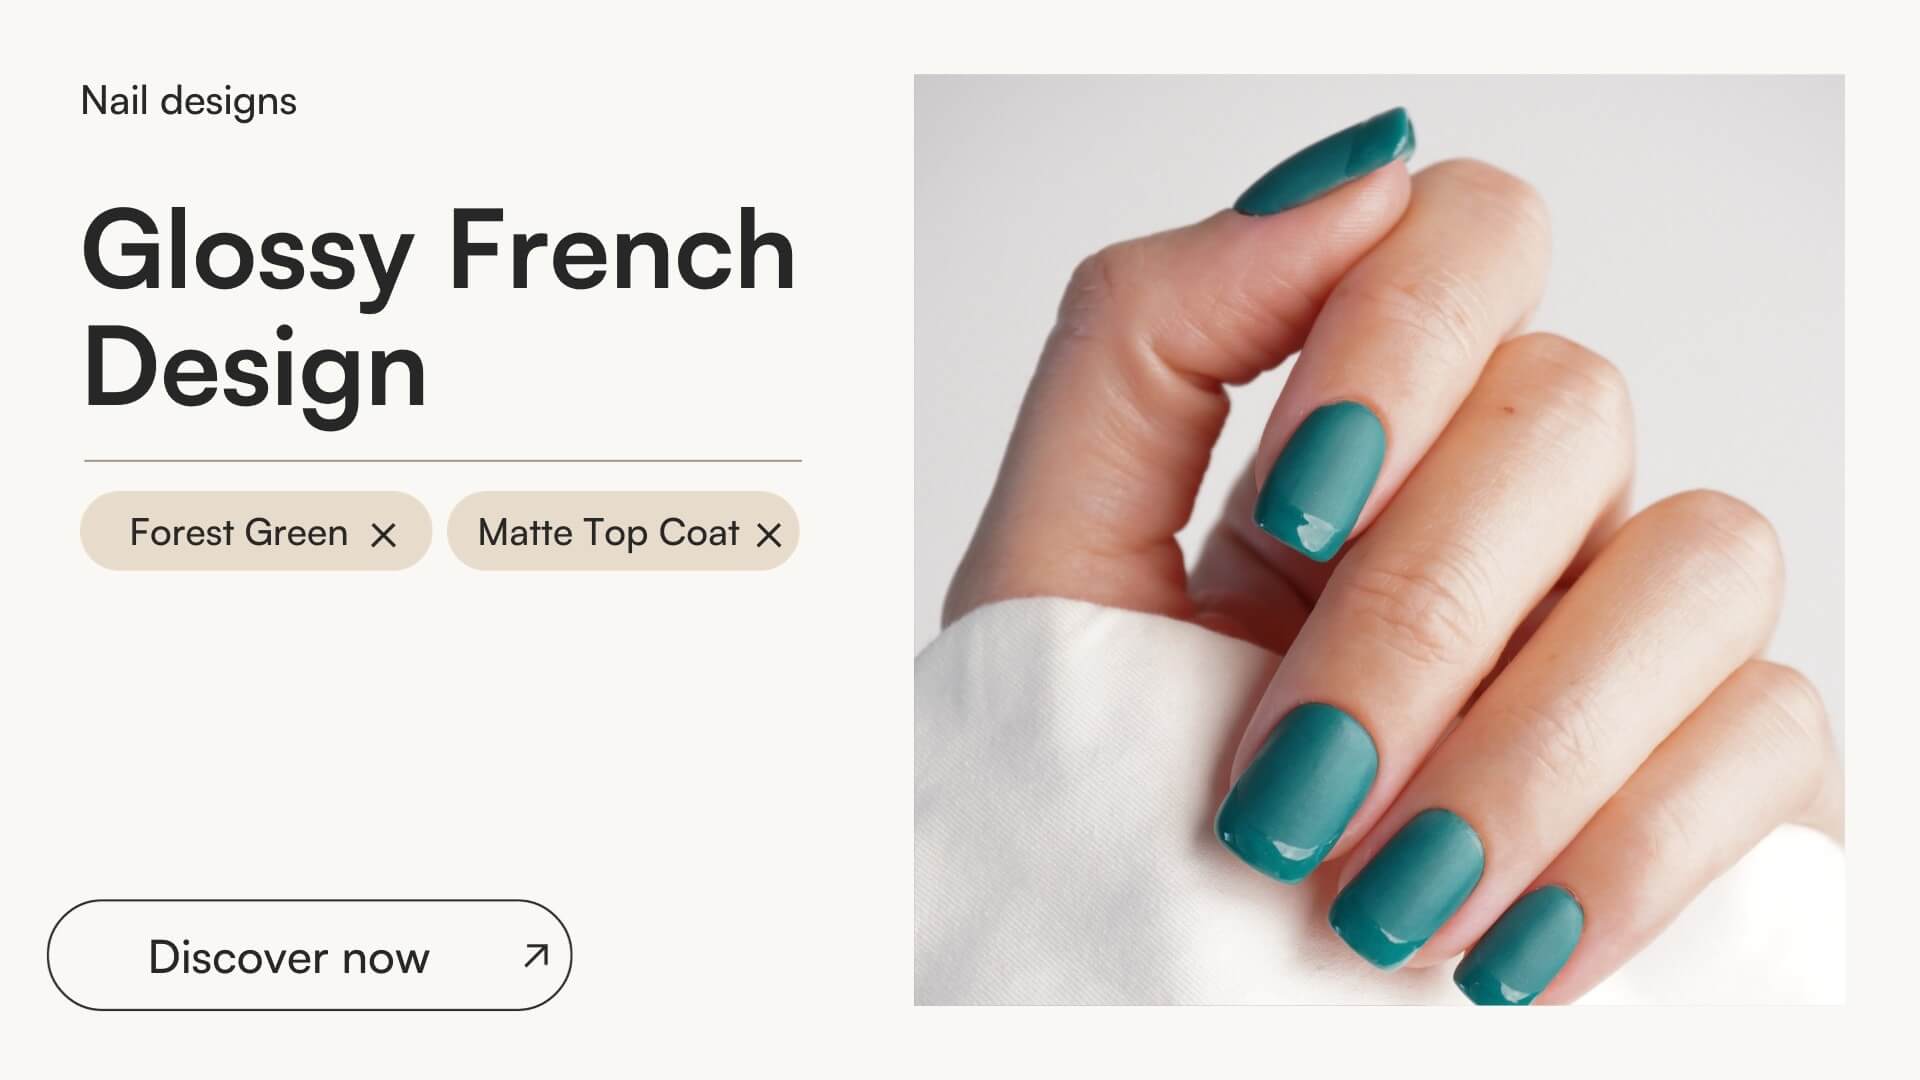 Glossy French Design